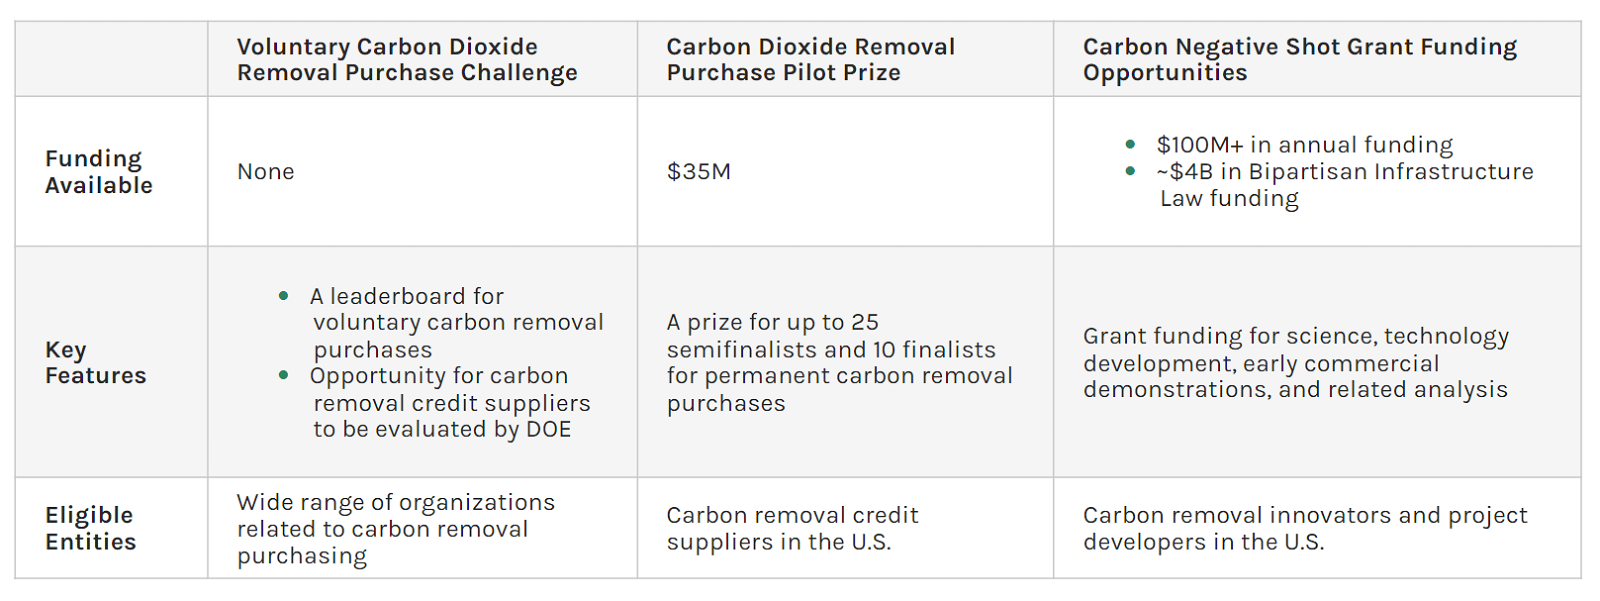 تحدي الشراء الطوعي لإزالة ثاني أكسيد الكربون من وزارة الطاقة